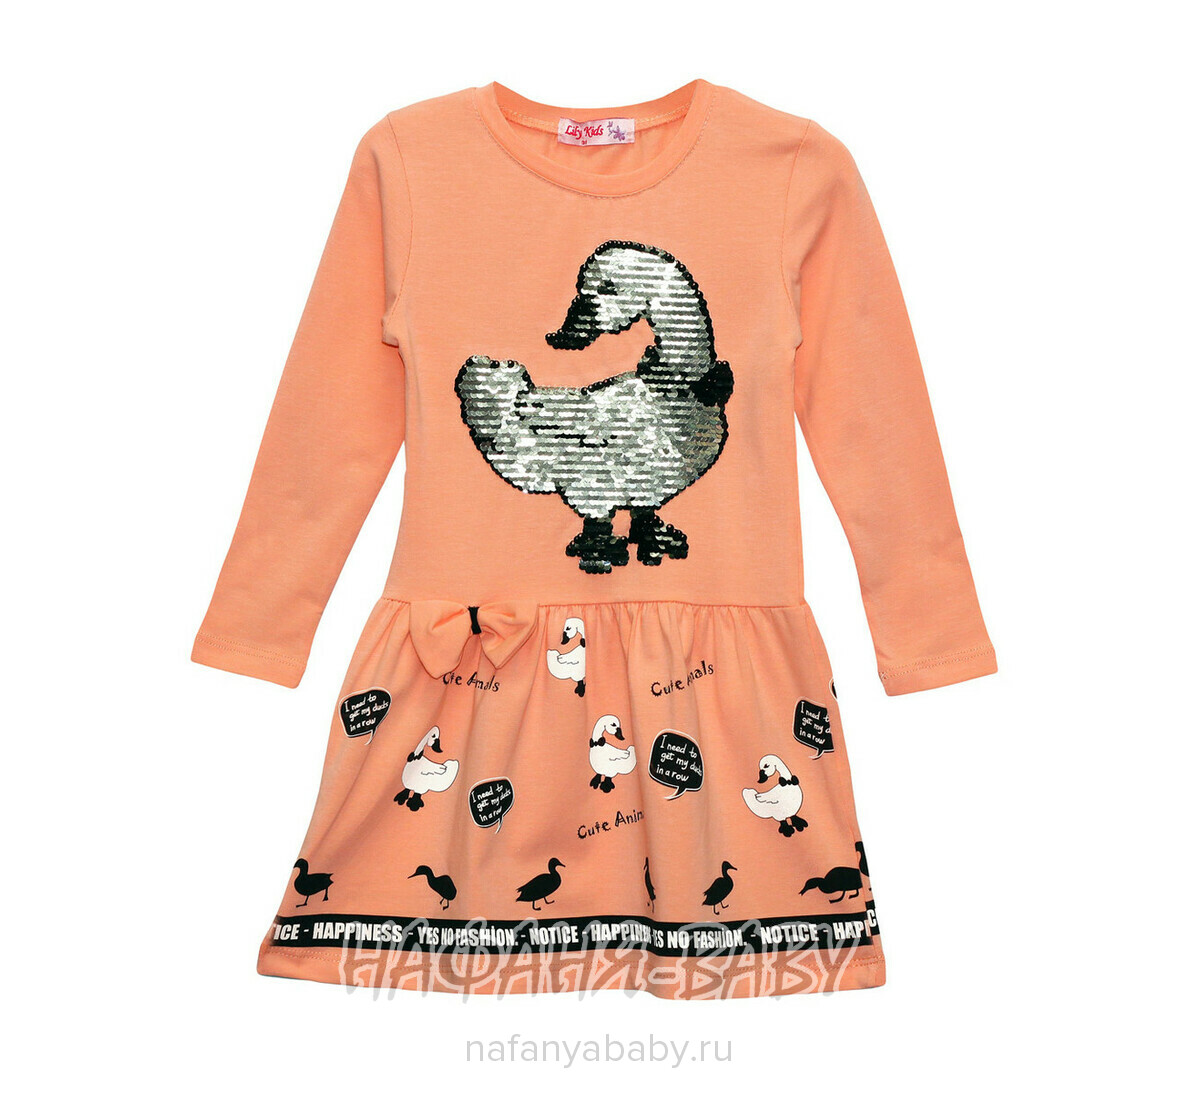 Детское платье с паетками-перевертышами LILY Kids, купить в интернет магазине Нафаня. арт: 5702.